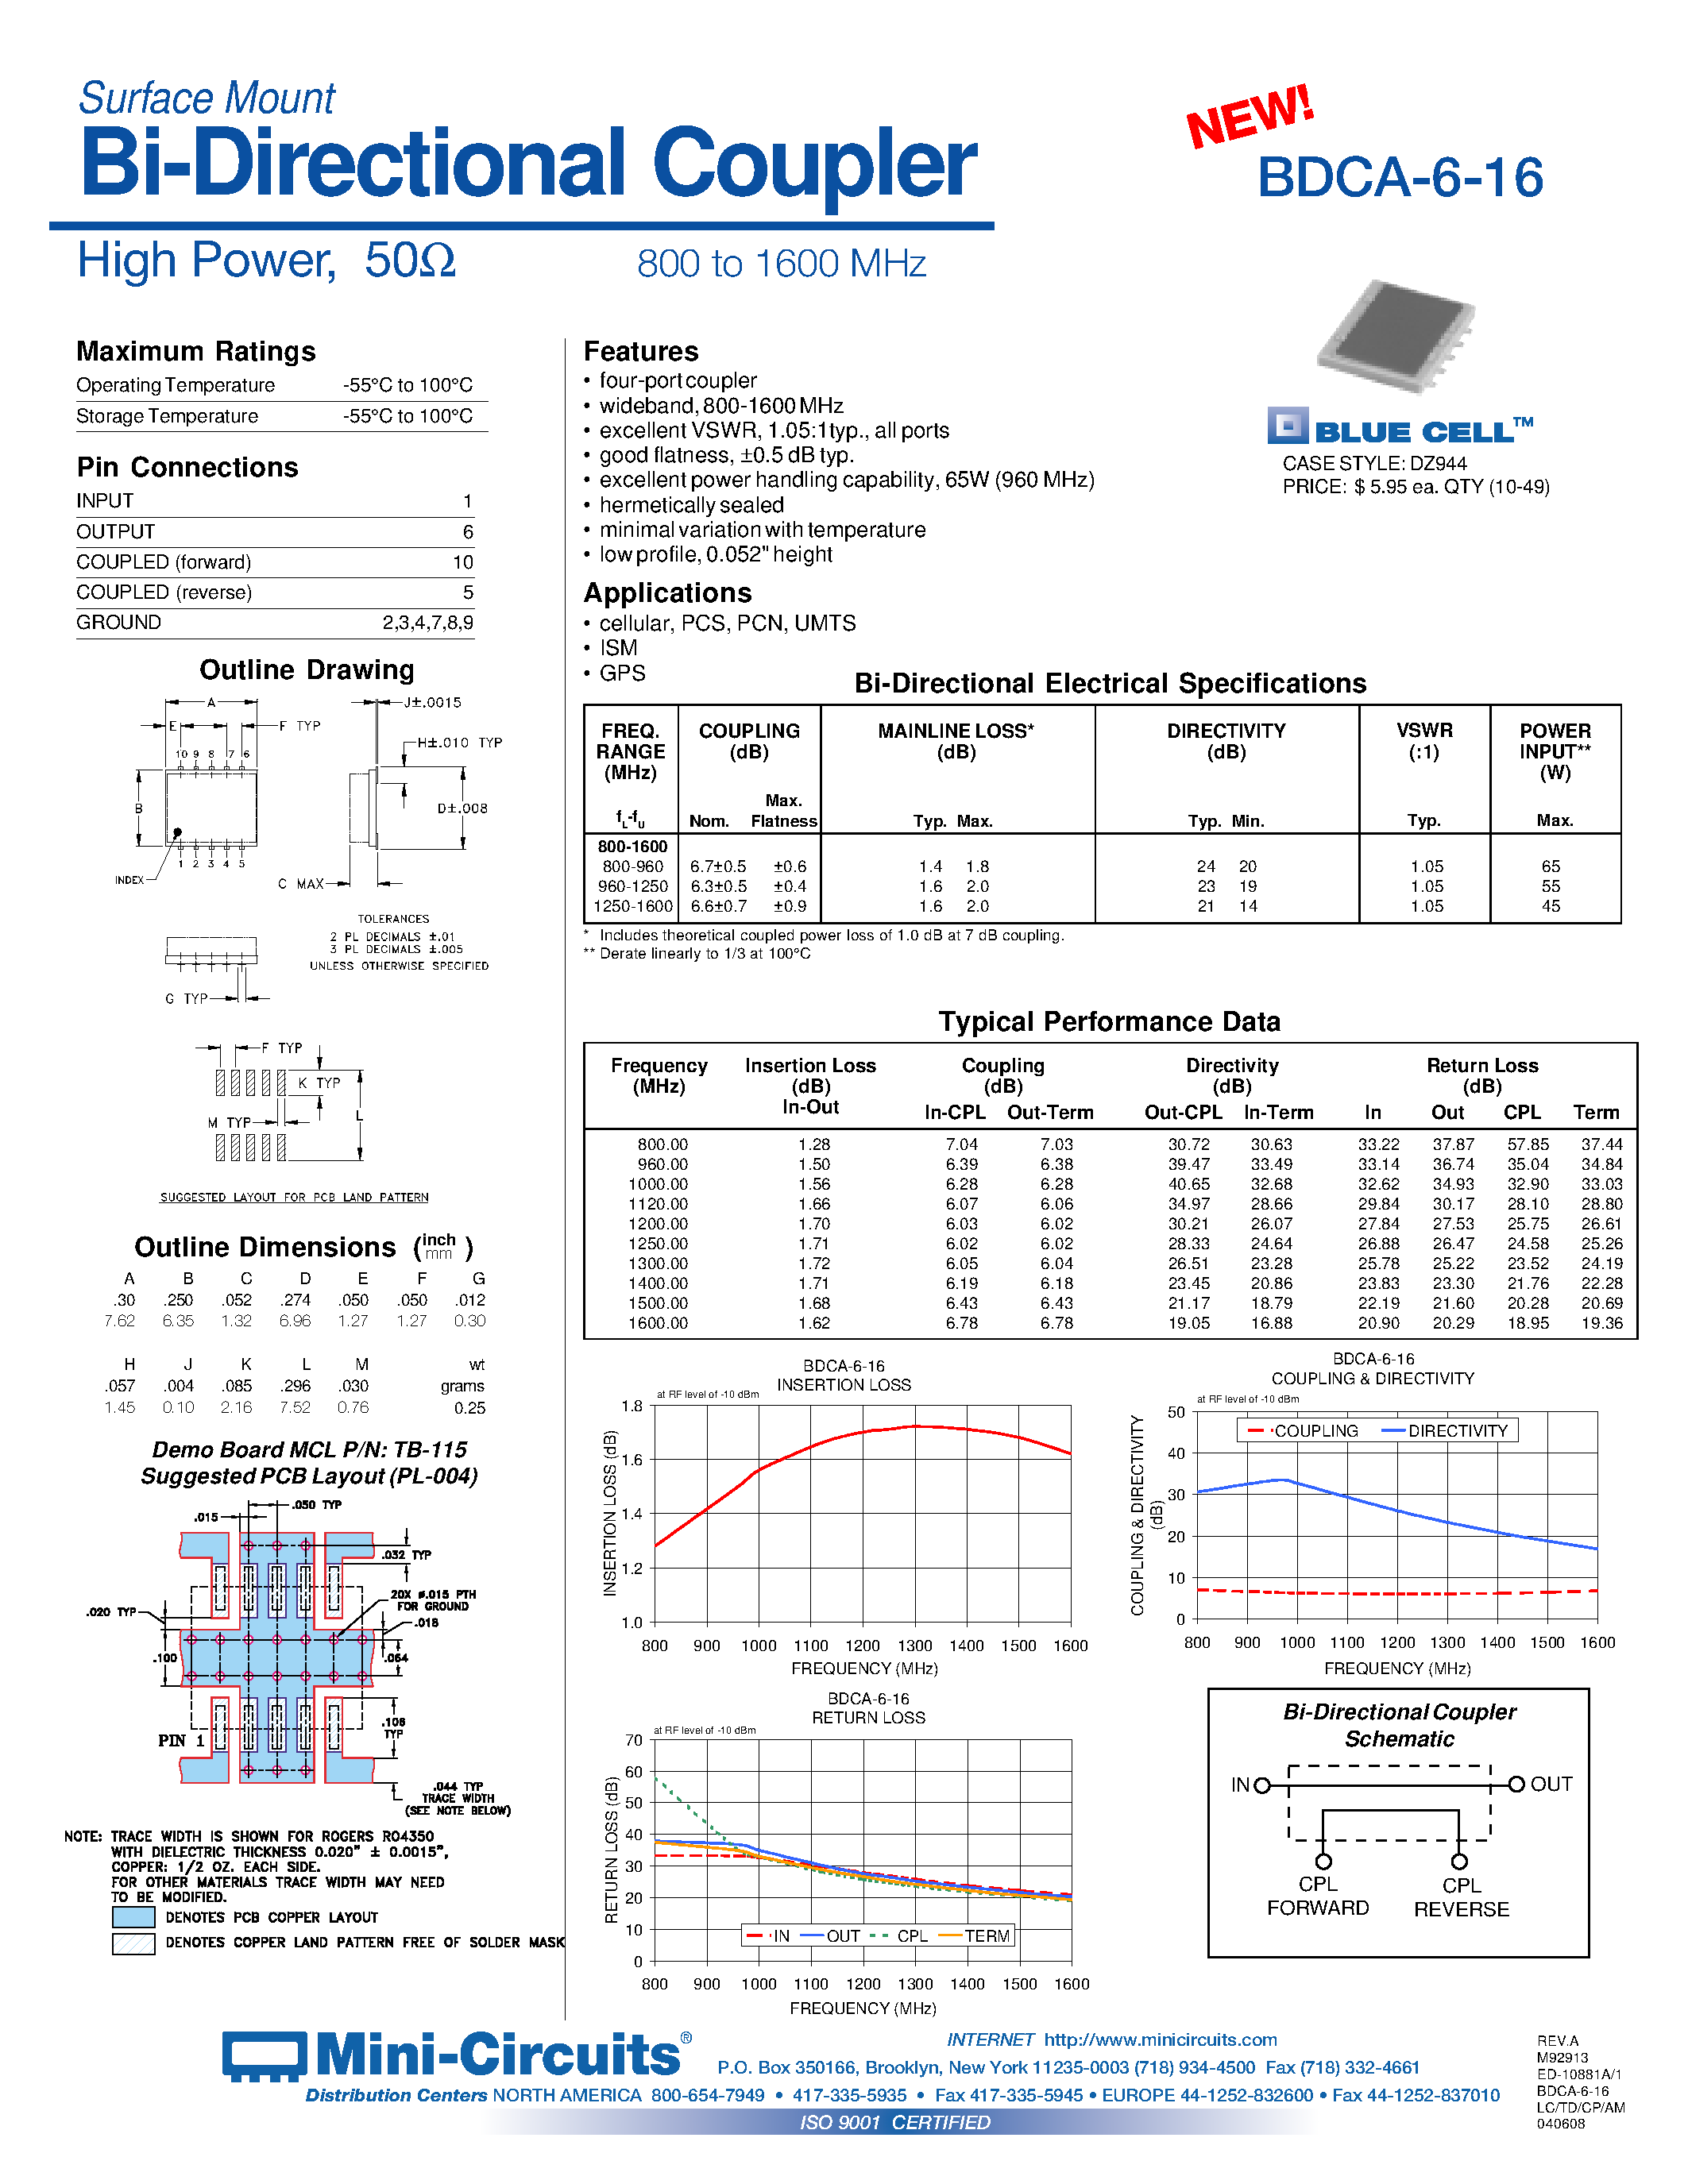 Datasheet BDCA-6-16 - Surface Mount Bi-Directional Coupler page 1